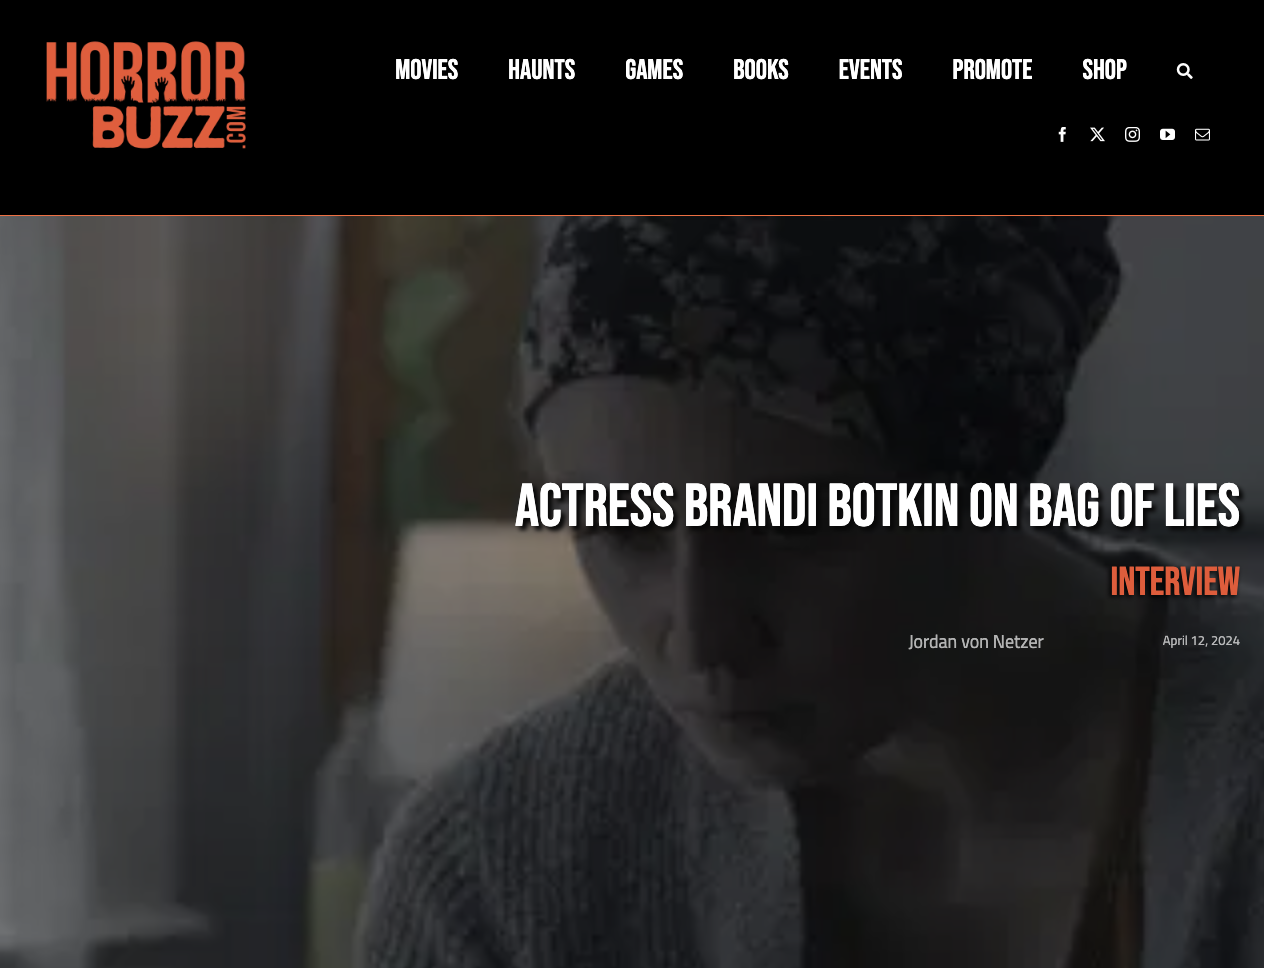 Actress Brandi Botkin on Bag of Lies